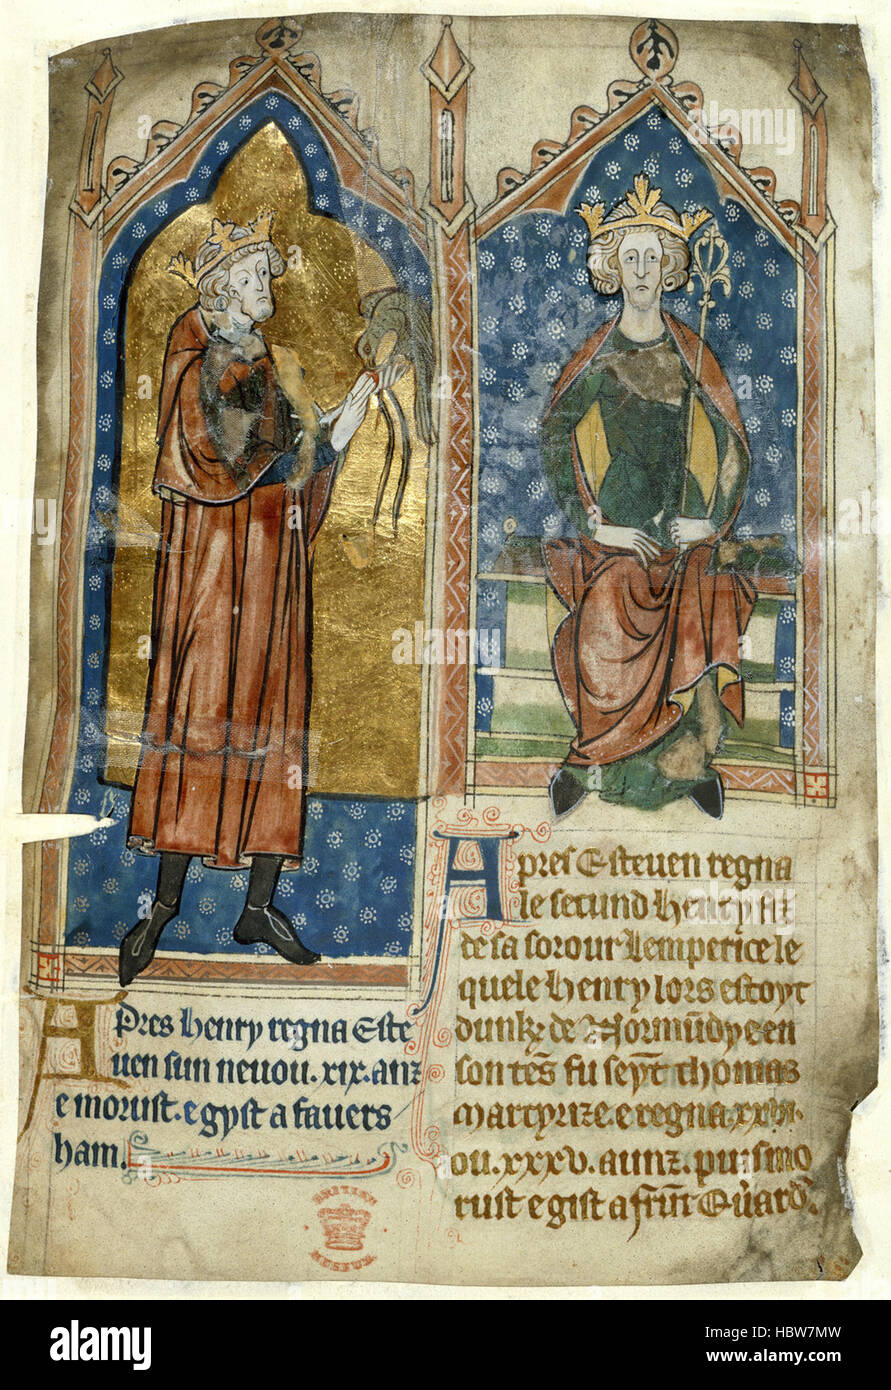 Diverse Chroniken - caption: "King Stephen und König Henry II" sonstige Chroniken - caption "King Stephen und König Henry II." Stockfoto